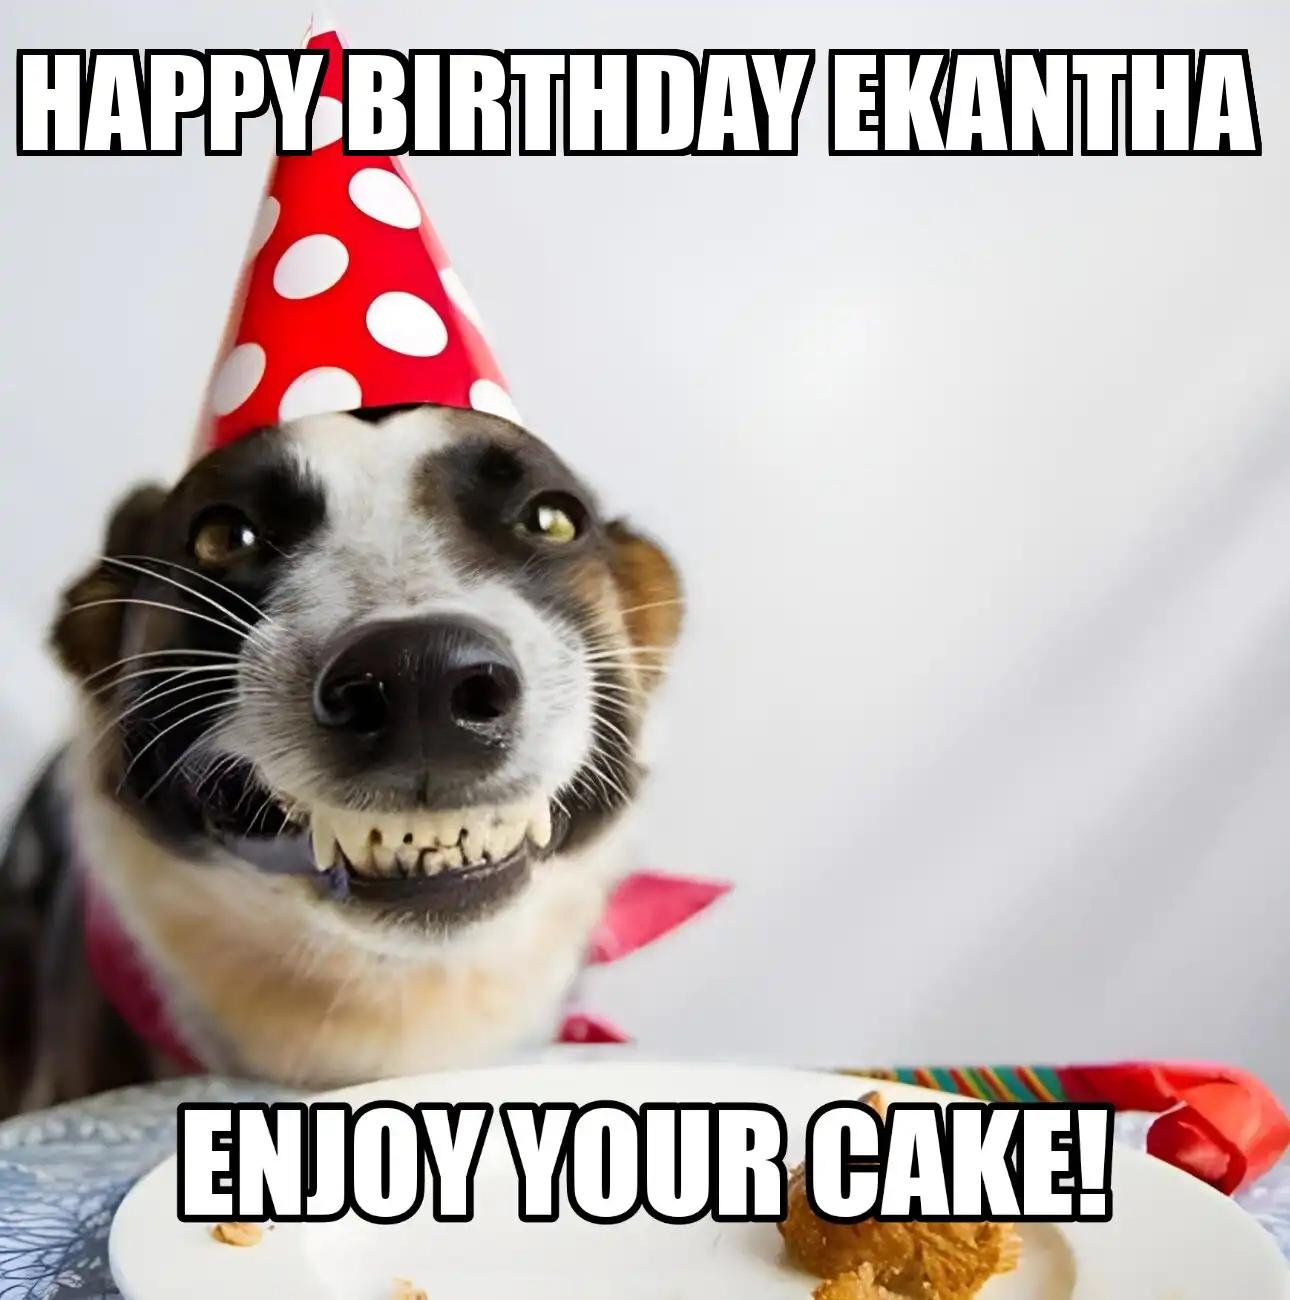 Happy Birthday Ekantha Enjoy Your Cake Dog Meme